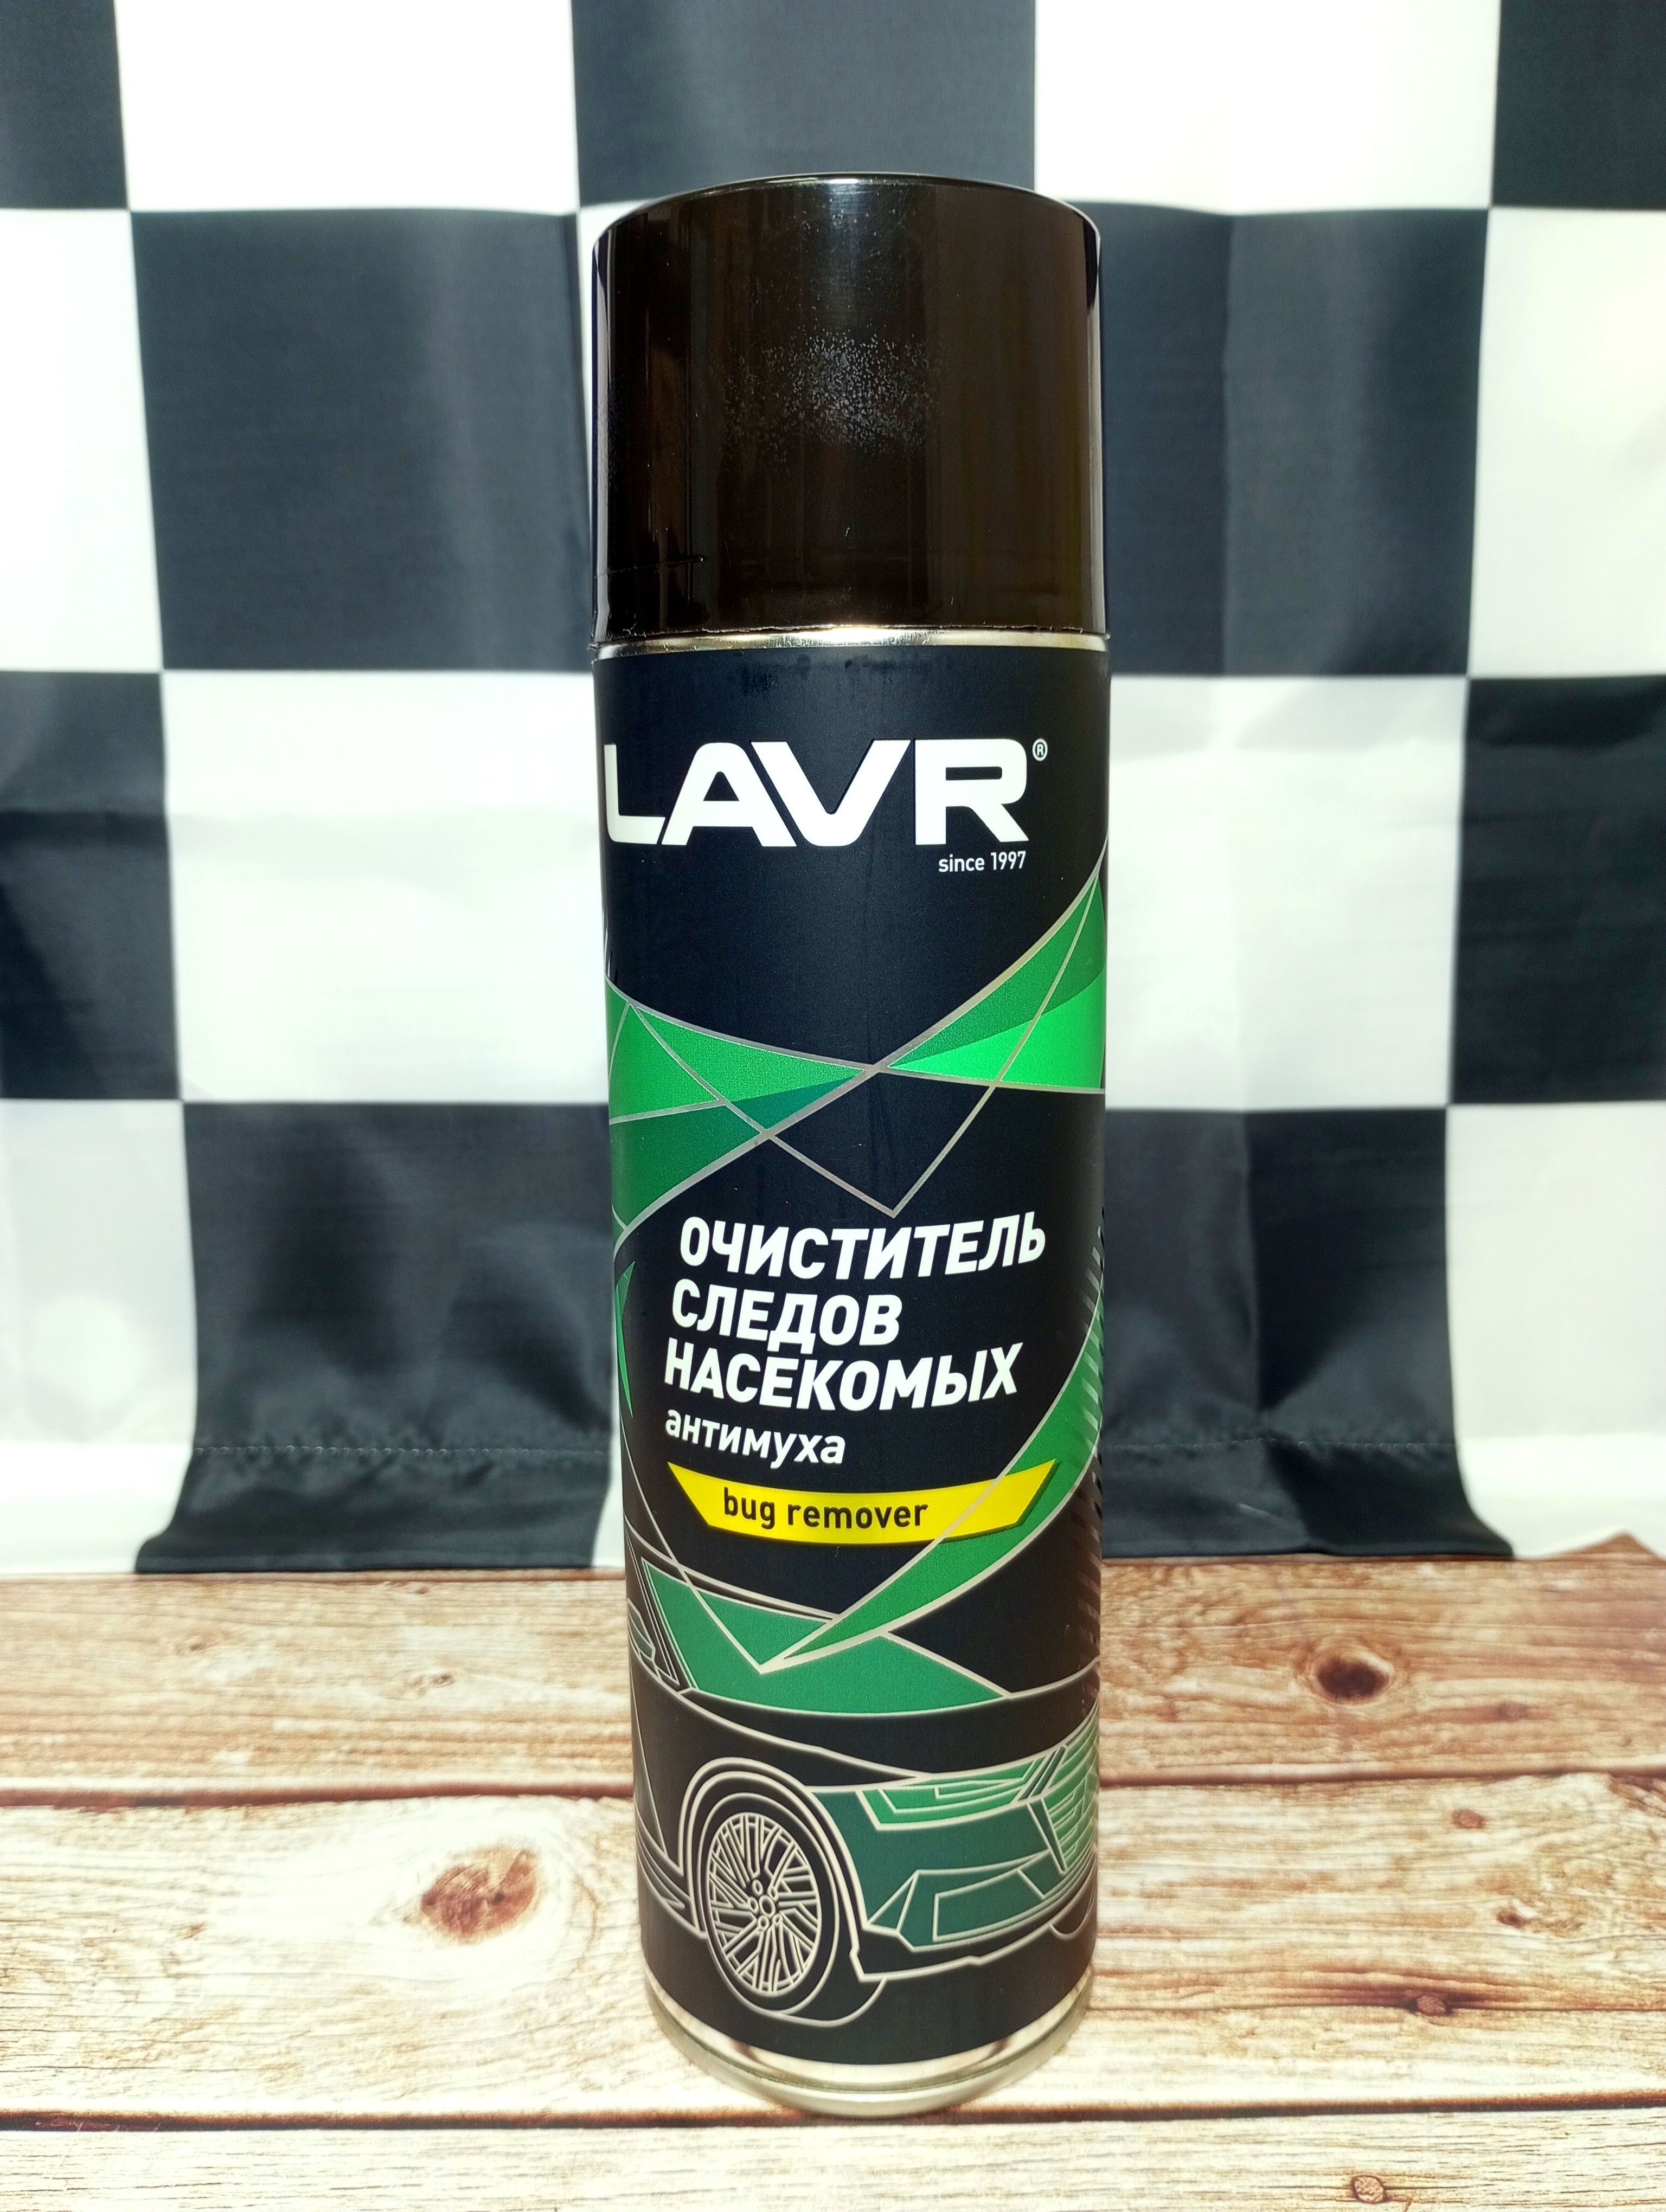 LAVR Bug Remover Антимуха Аэрозольная пена для очистки от следов насекомых 650 мл